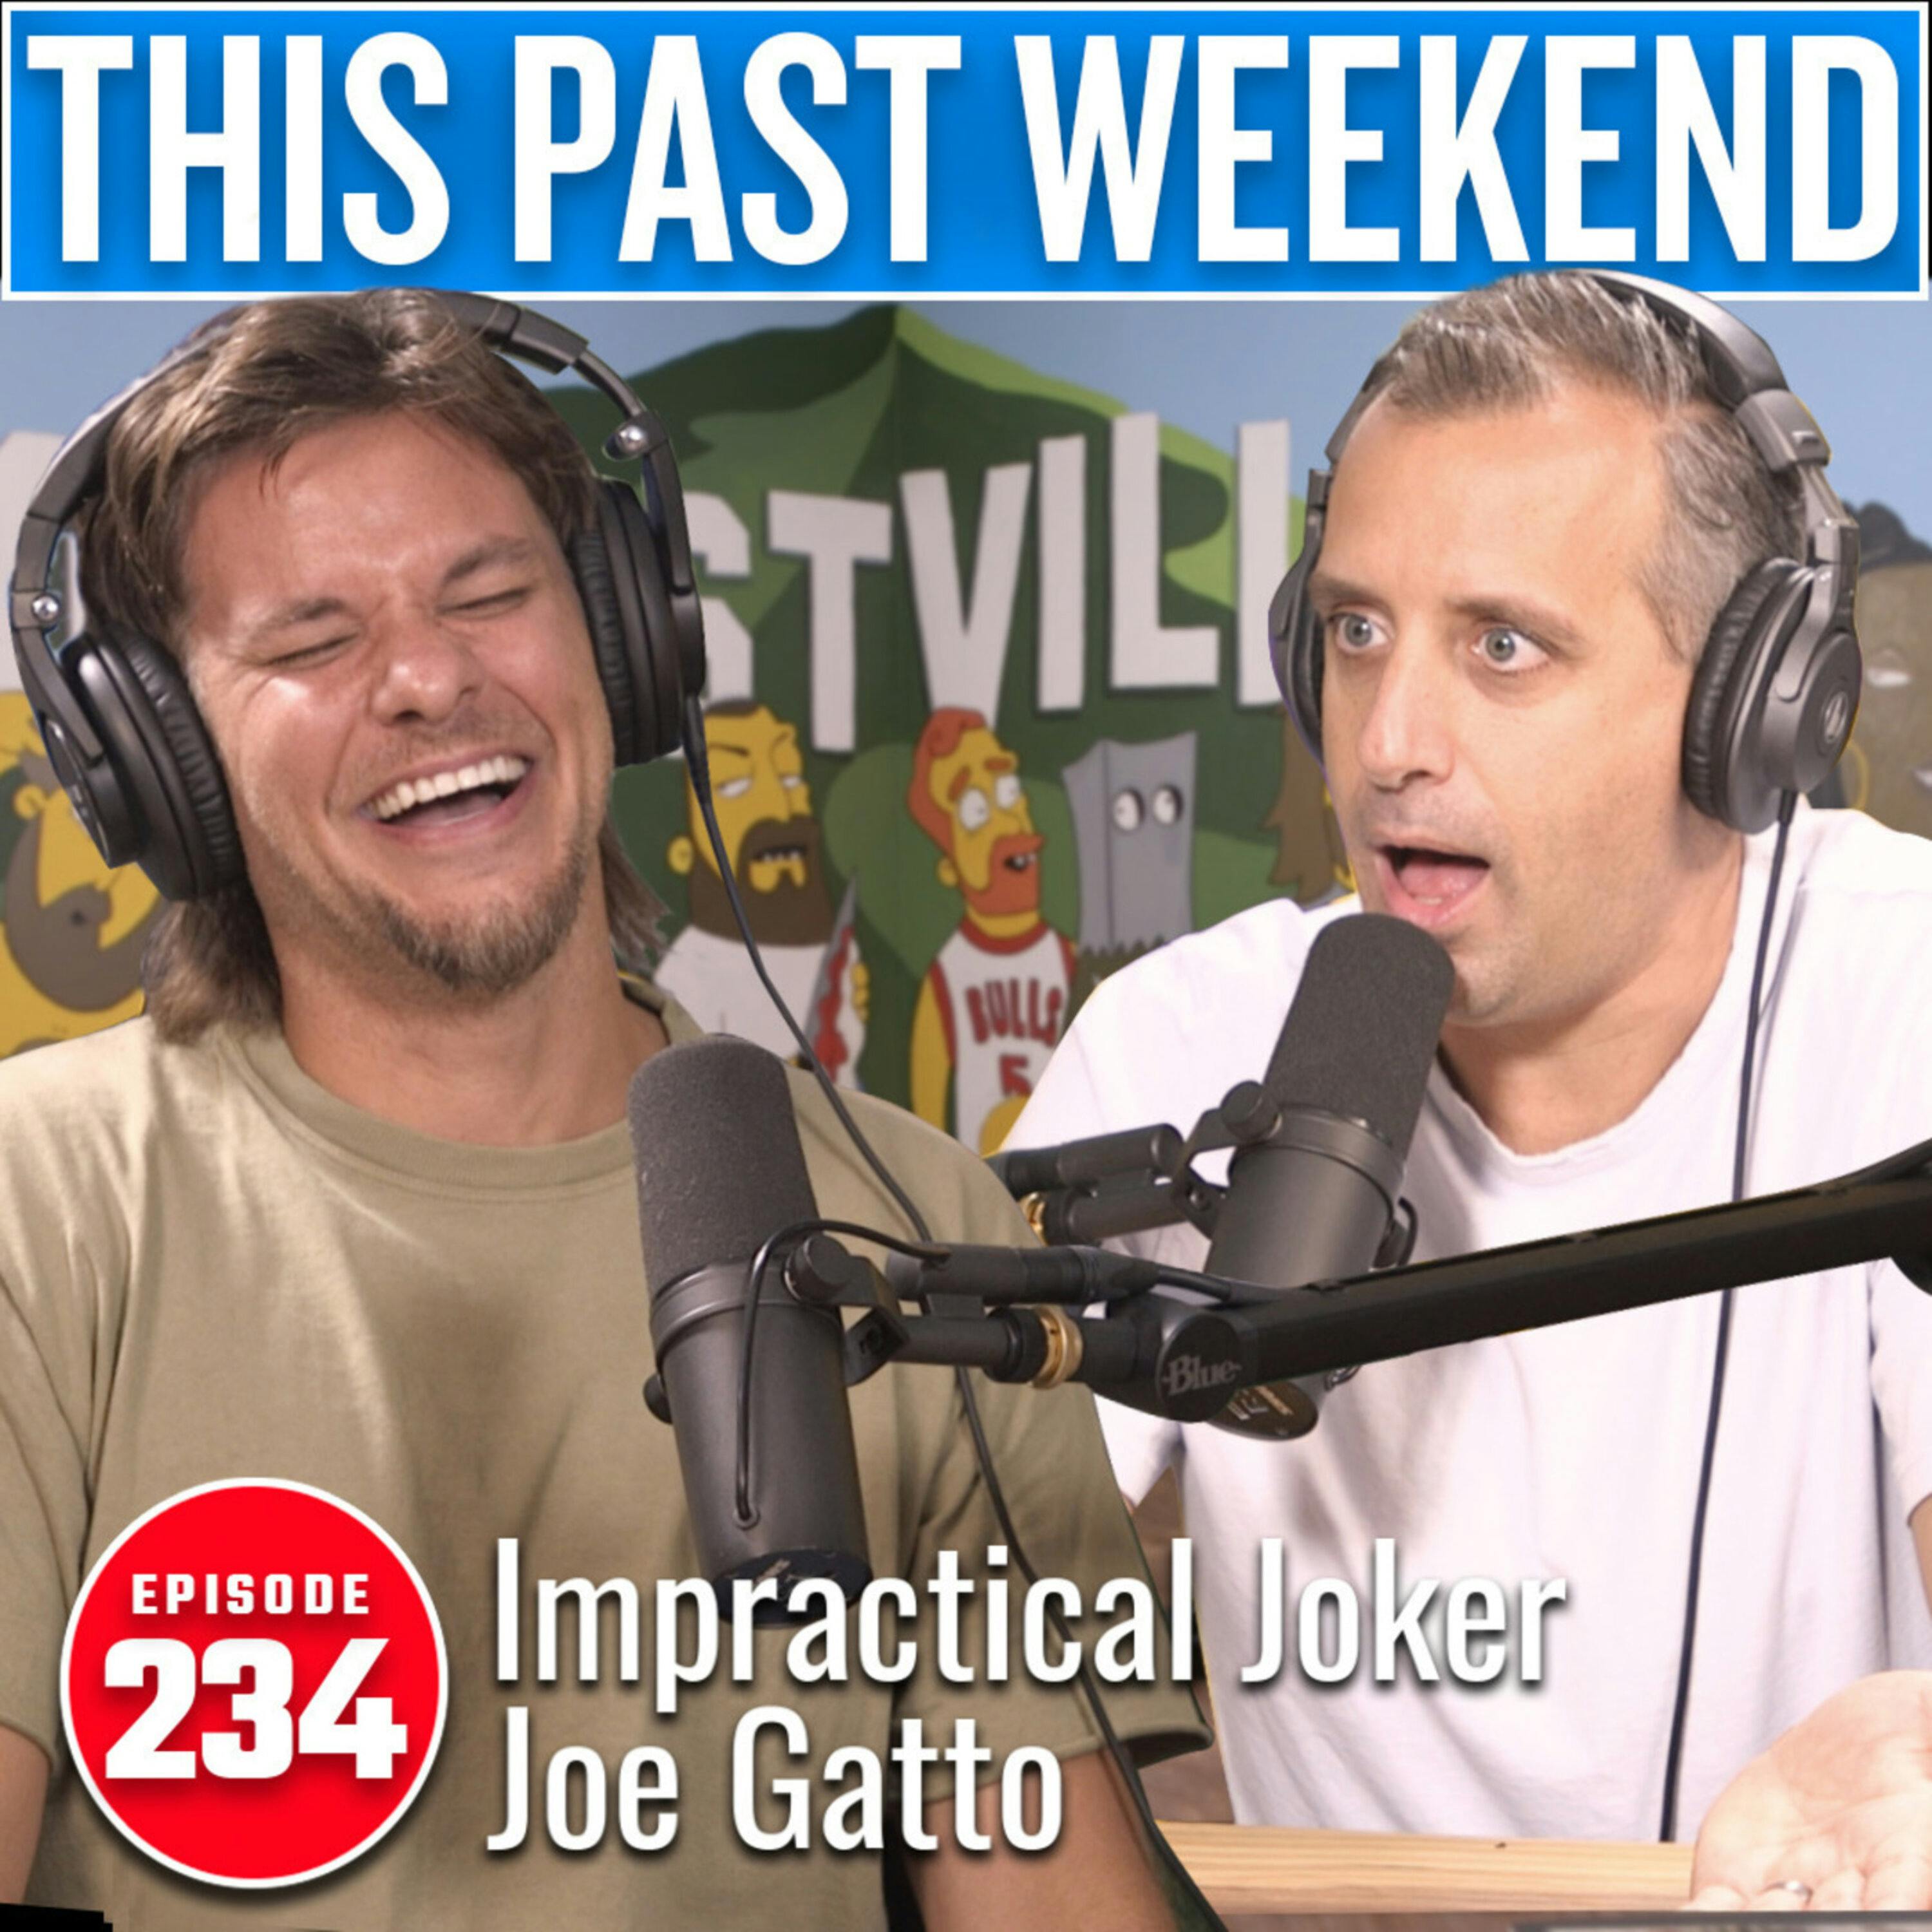 Impractical Joker Joe Gatto | This Past Weekend #234 by Theo Von